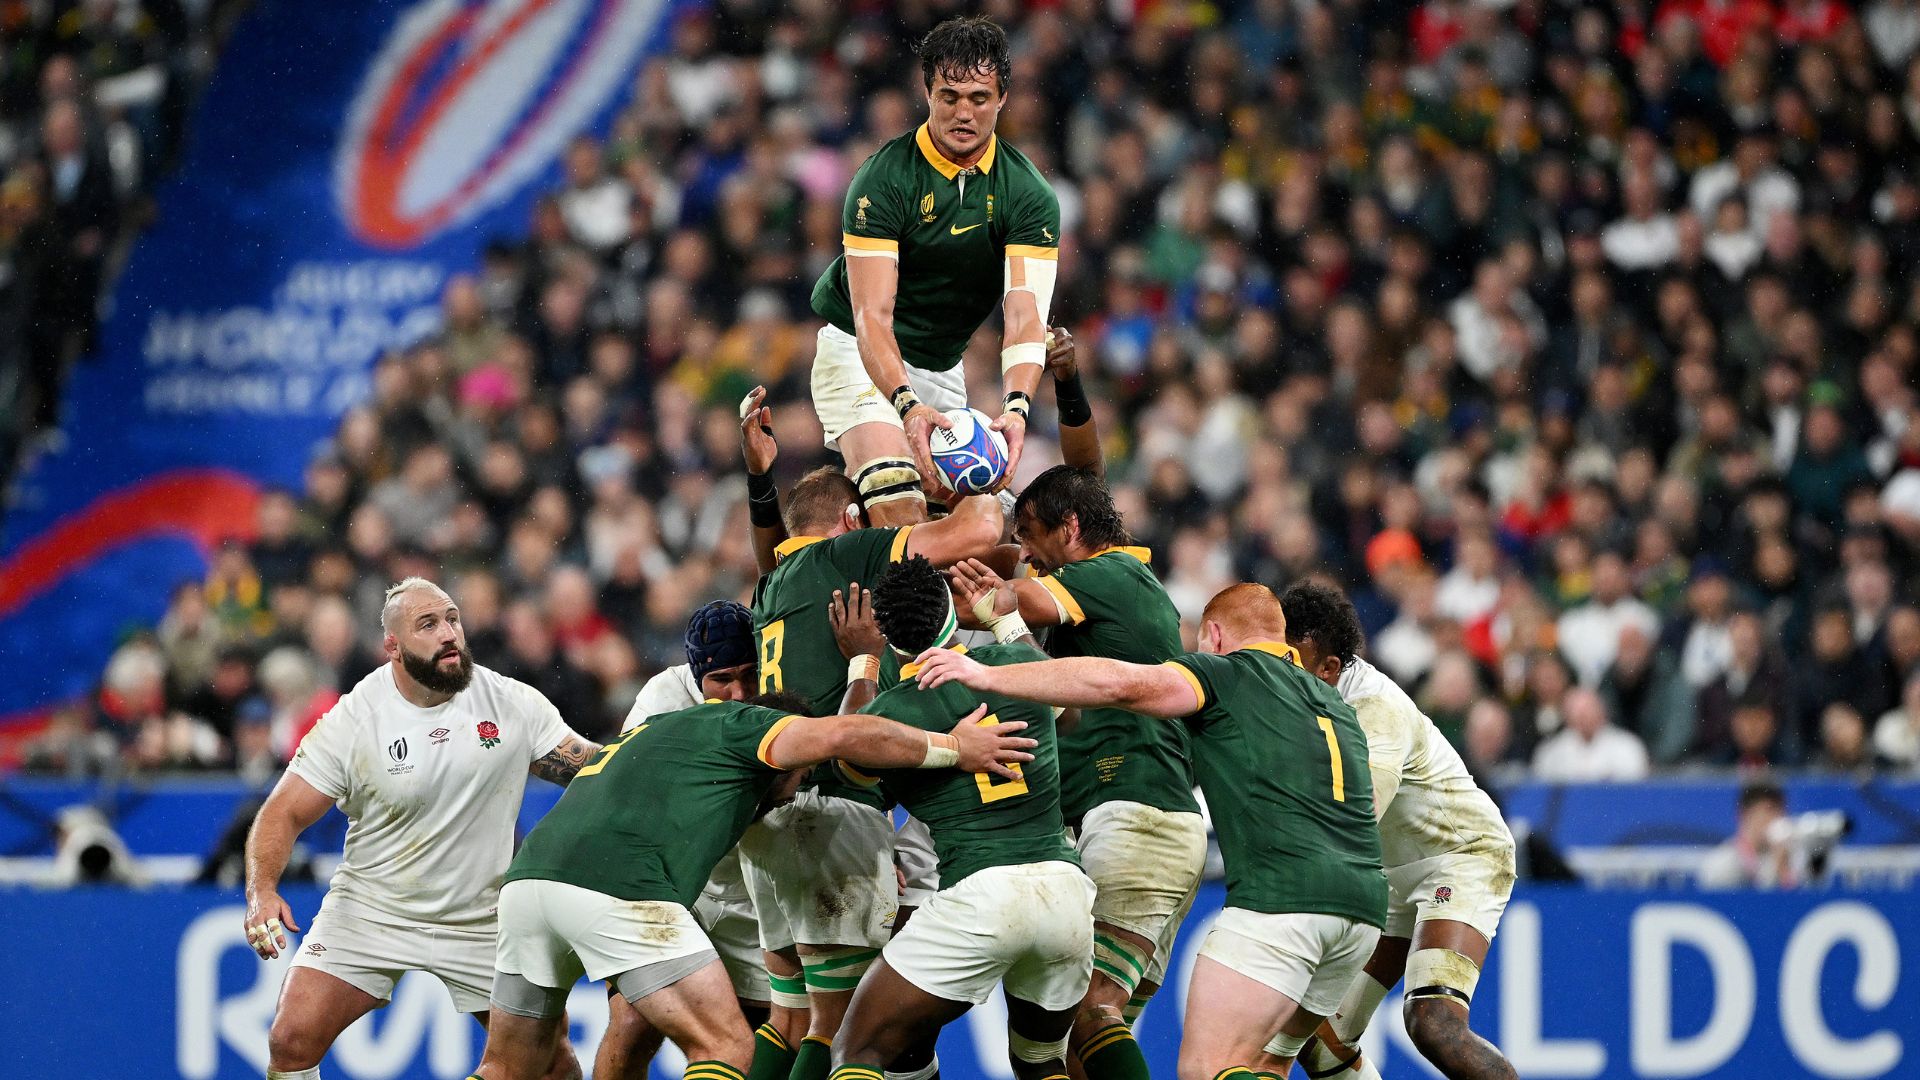 Rugby : Copa do Mundo 23, Saiba tudo Aqui ! - Blog da Penalty #JogaJuntoNews